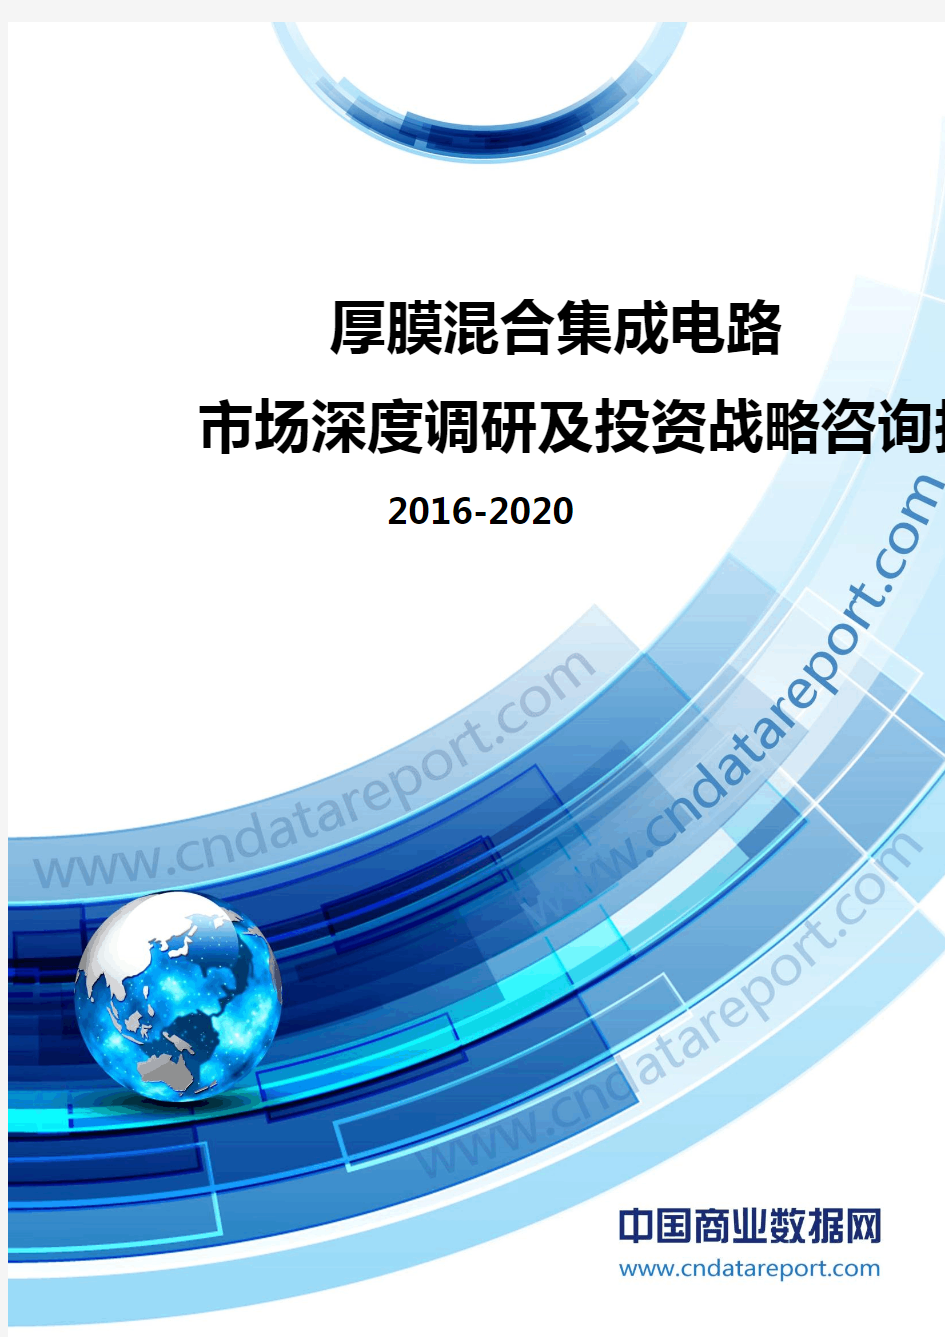 2016-2020年厚膜混合集成电路市场深度调研及投资战略咨询报告